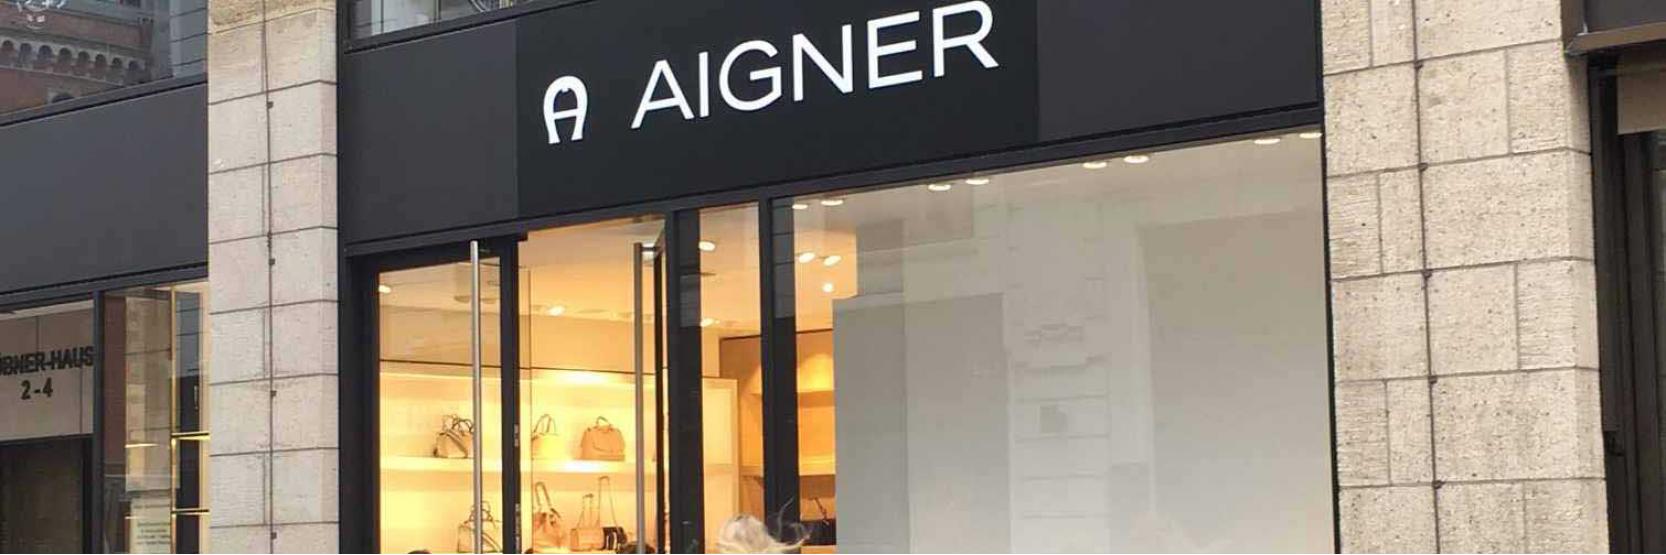  AIGNER - عالم العيش الأنيق 